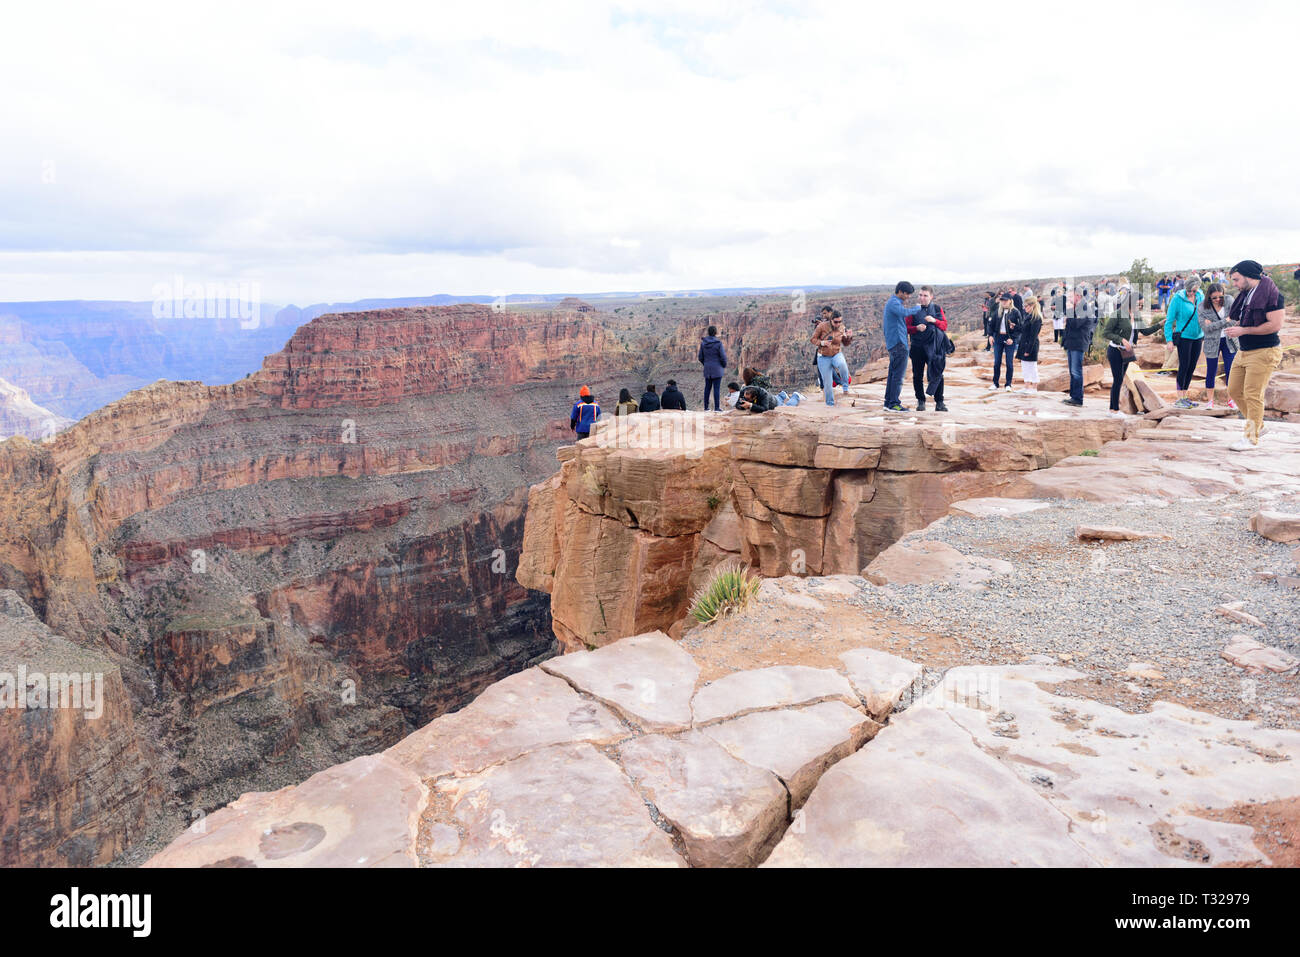 GRAND CANYON - 19 febbraio: turisti scattare foto di Eagle Point a West Rim del Grand Canyon il 19 febbraio 2017 nel Grand Canyon, AZ Foto Stock